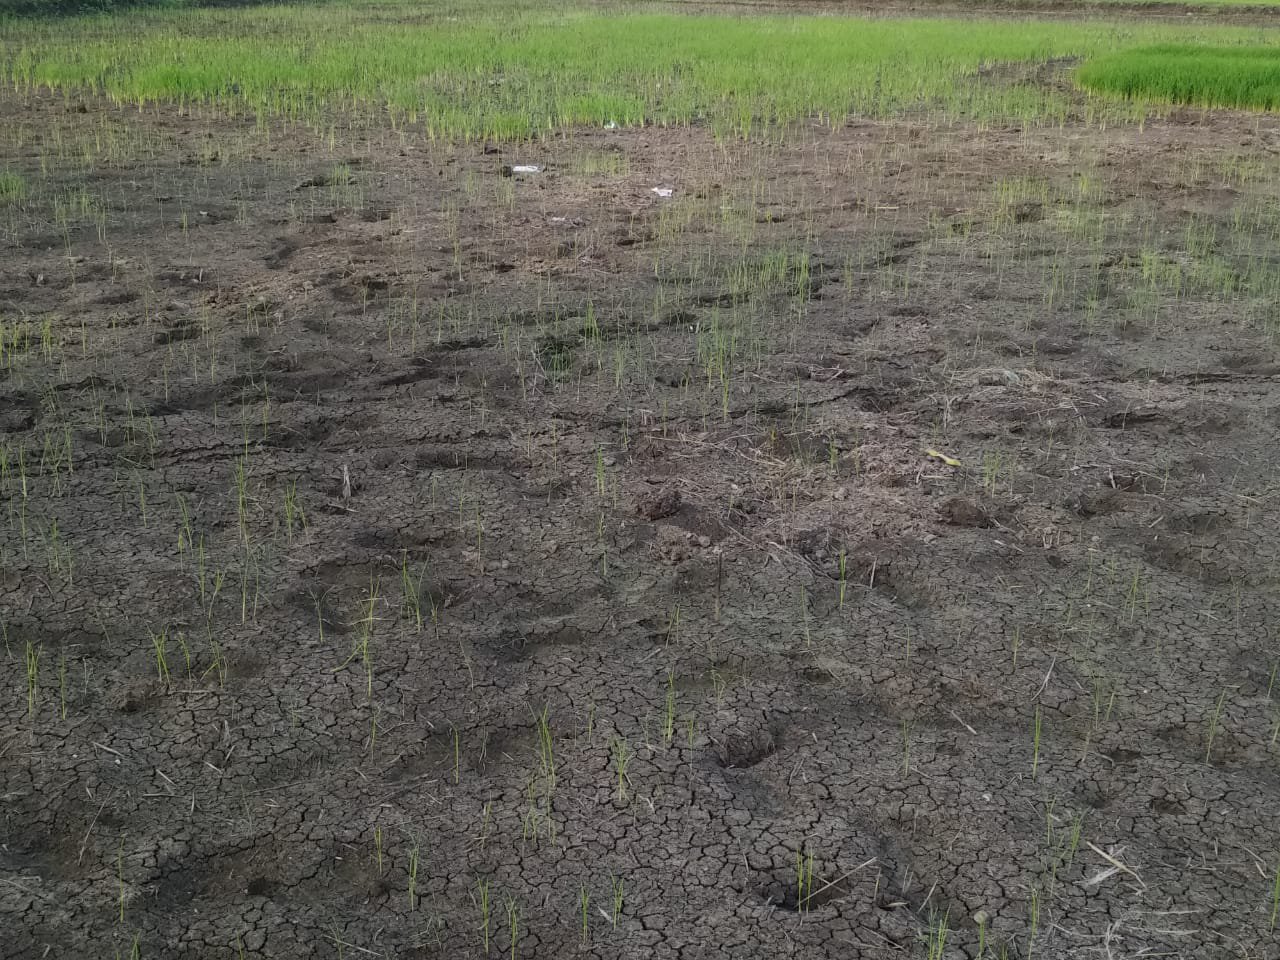 Rain water dried in field